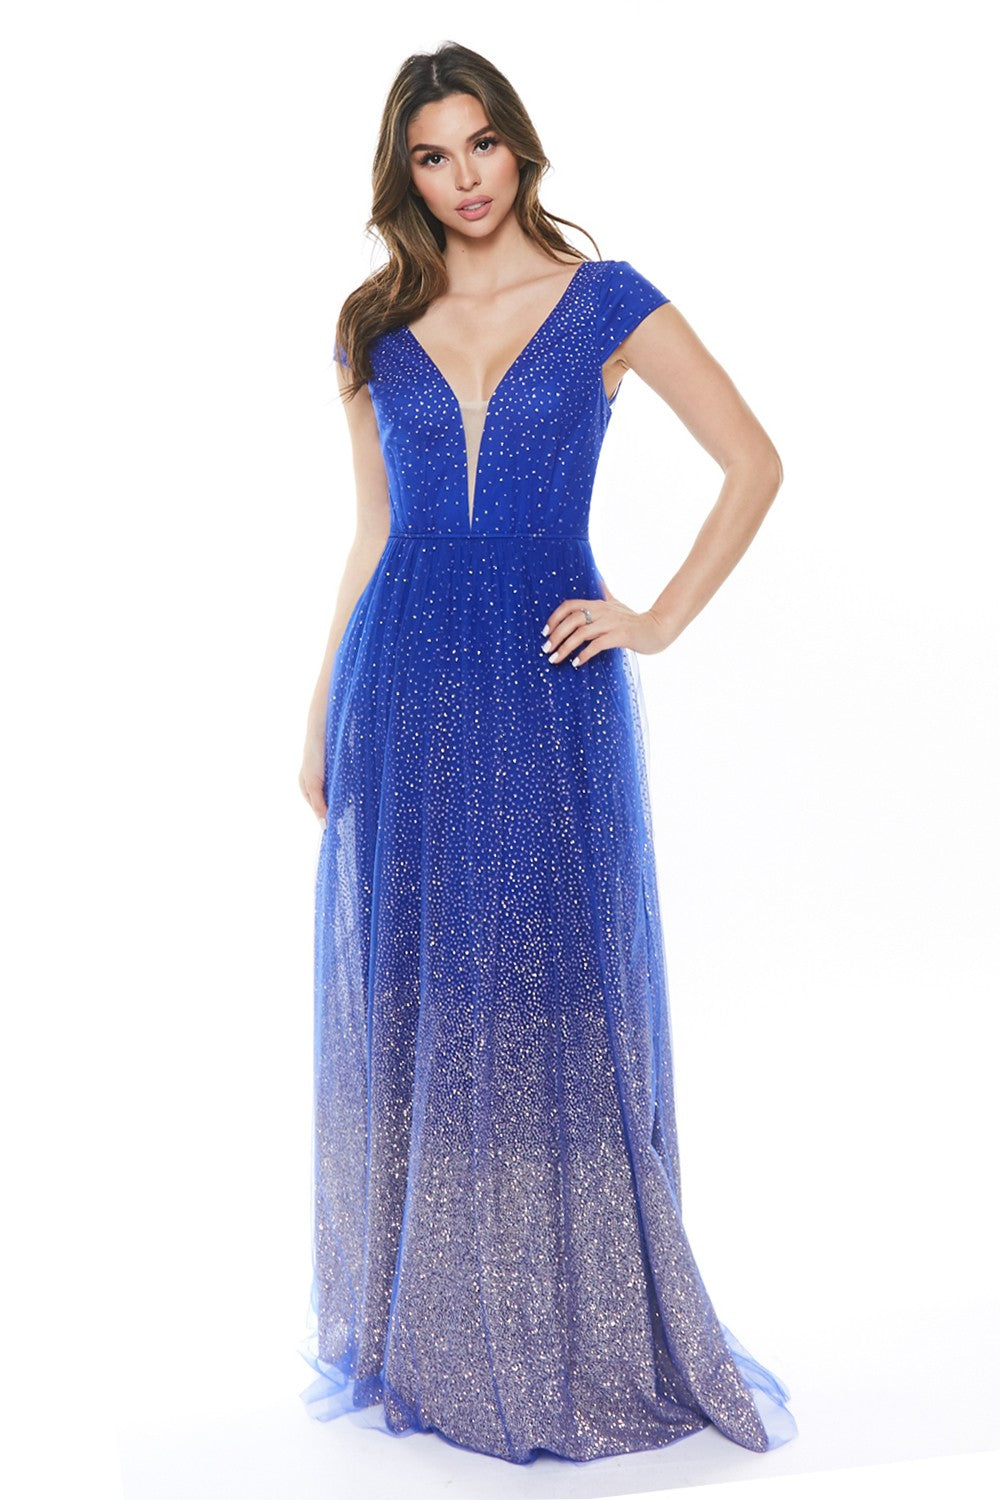 La Fleur Glimmer Gown (Royal Blue) FINAL SALE